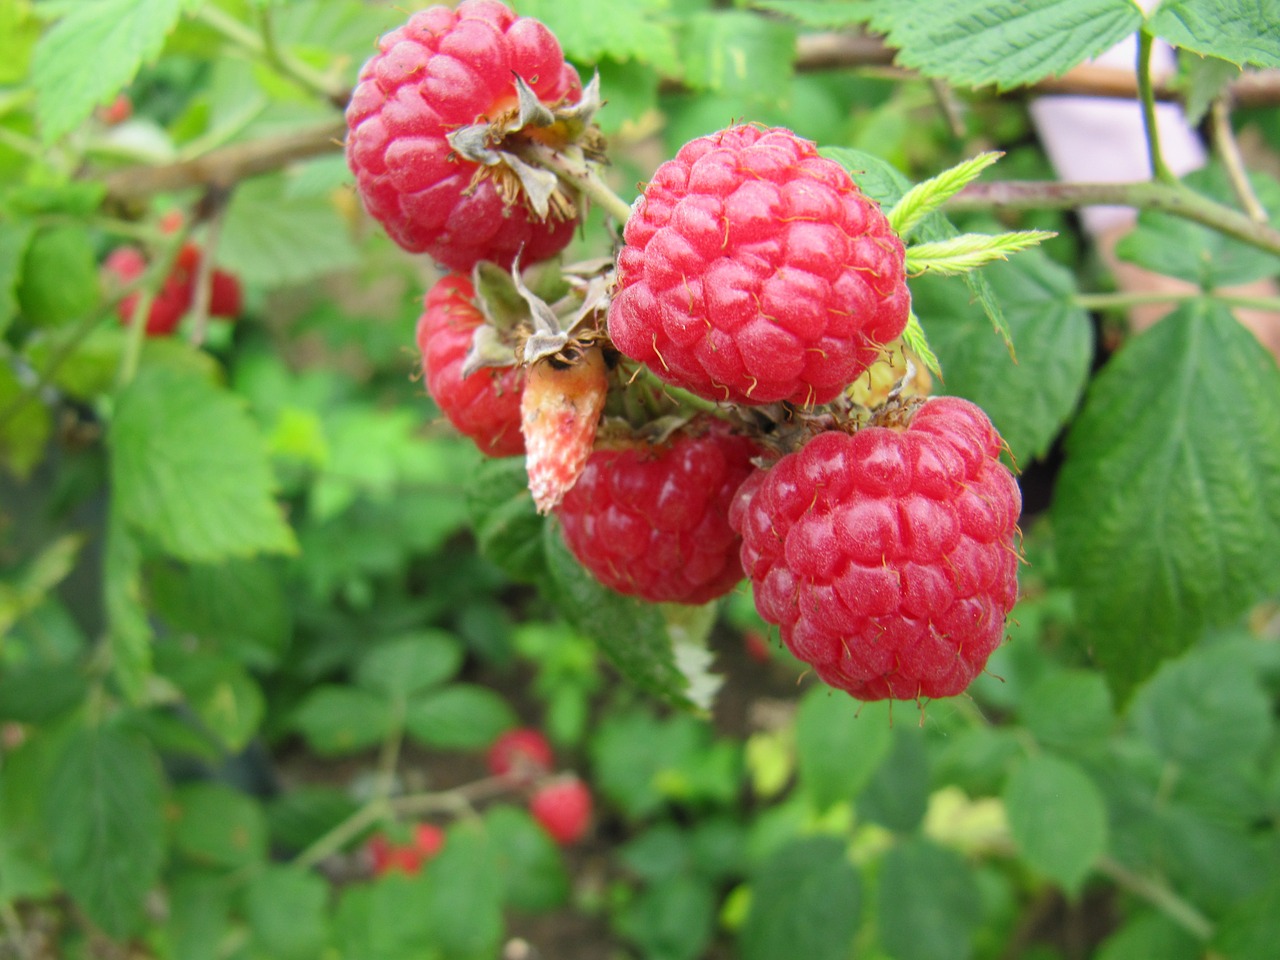 raspberries fruit growing free photo